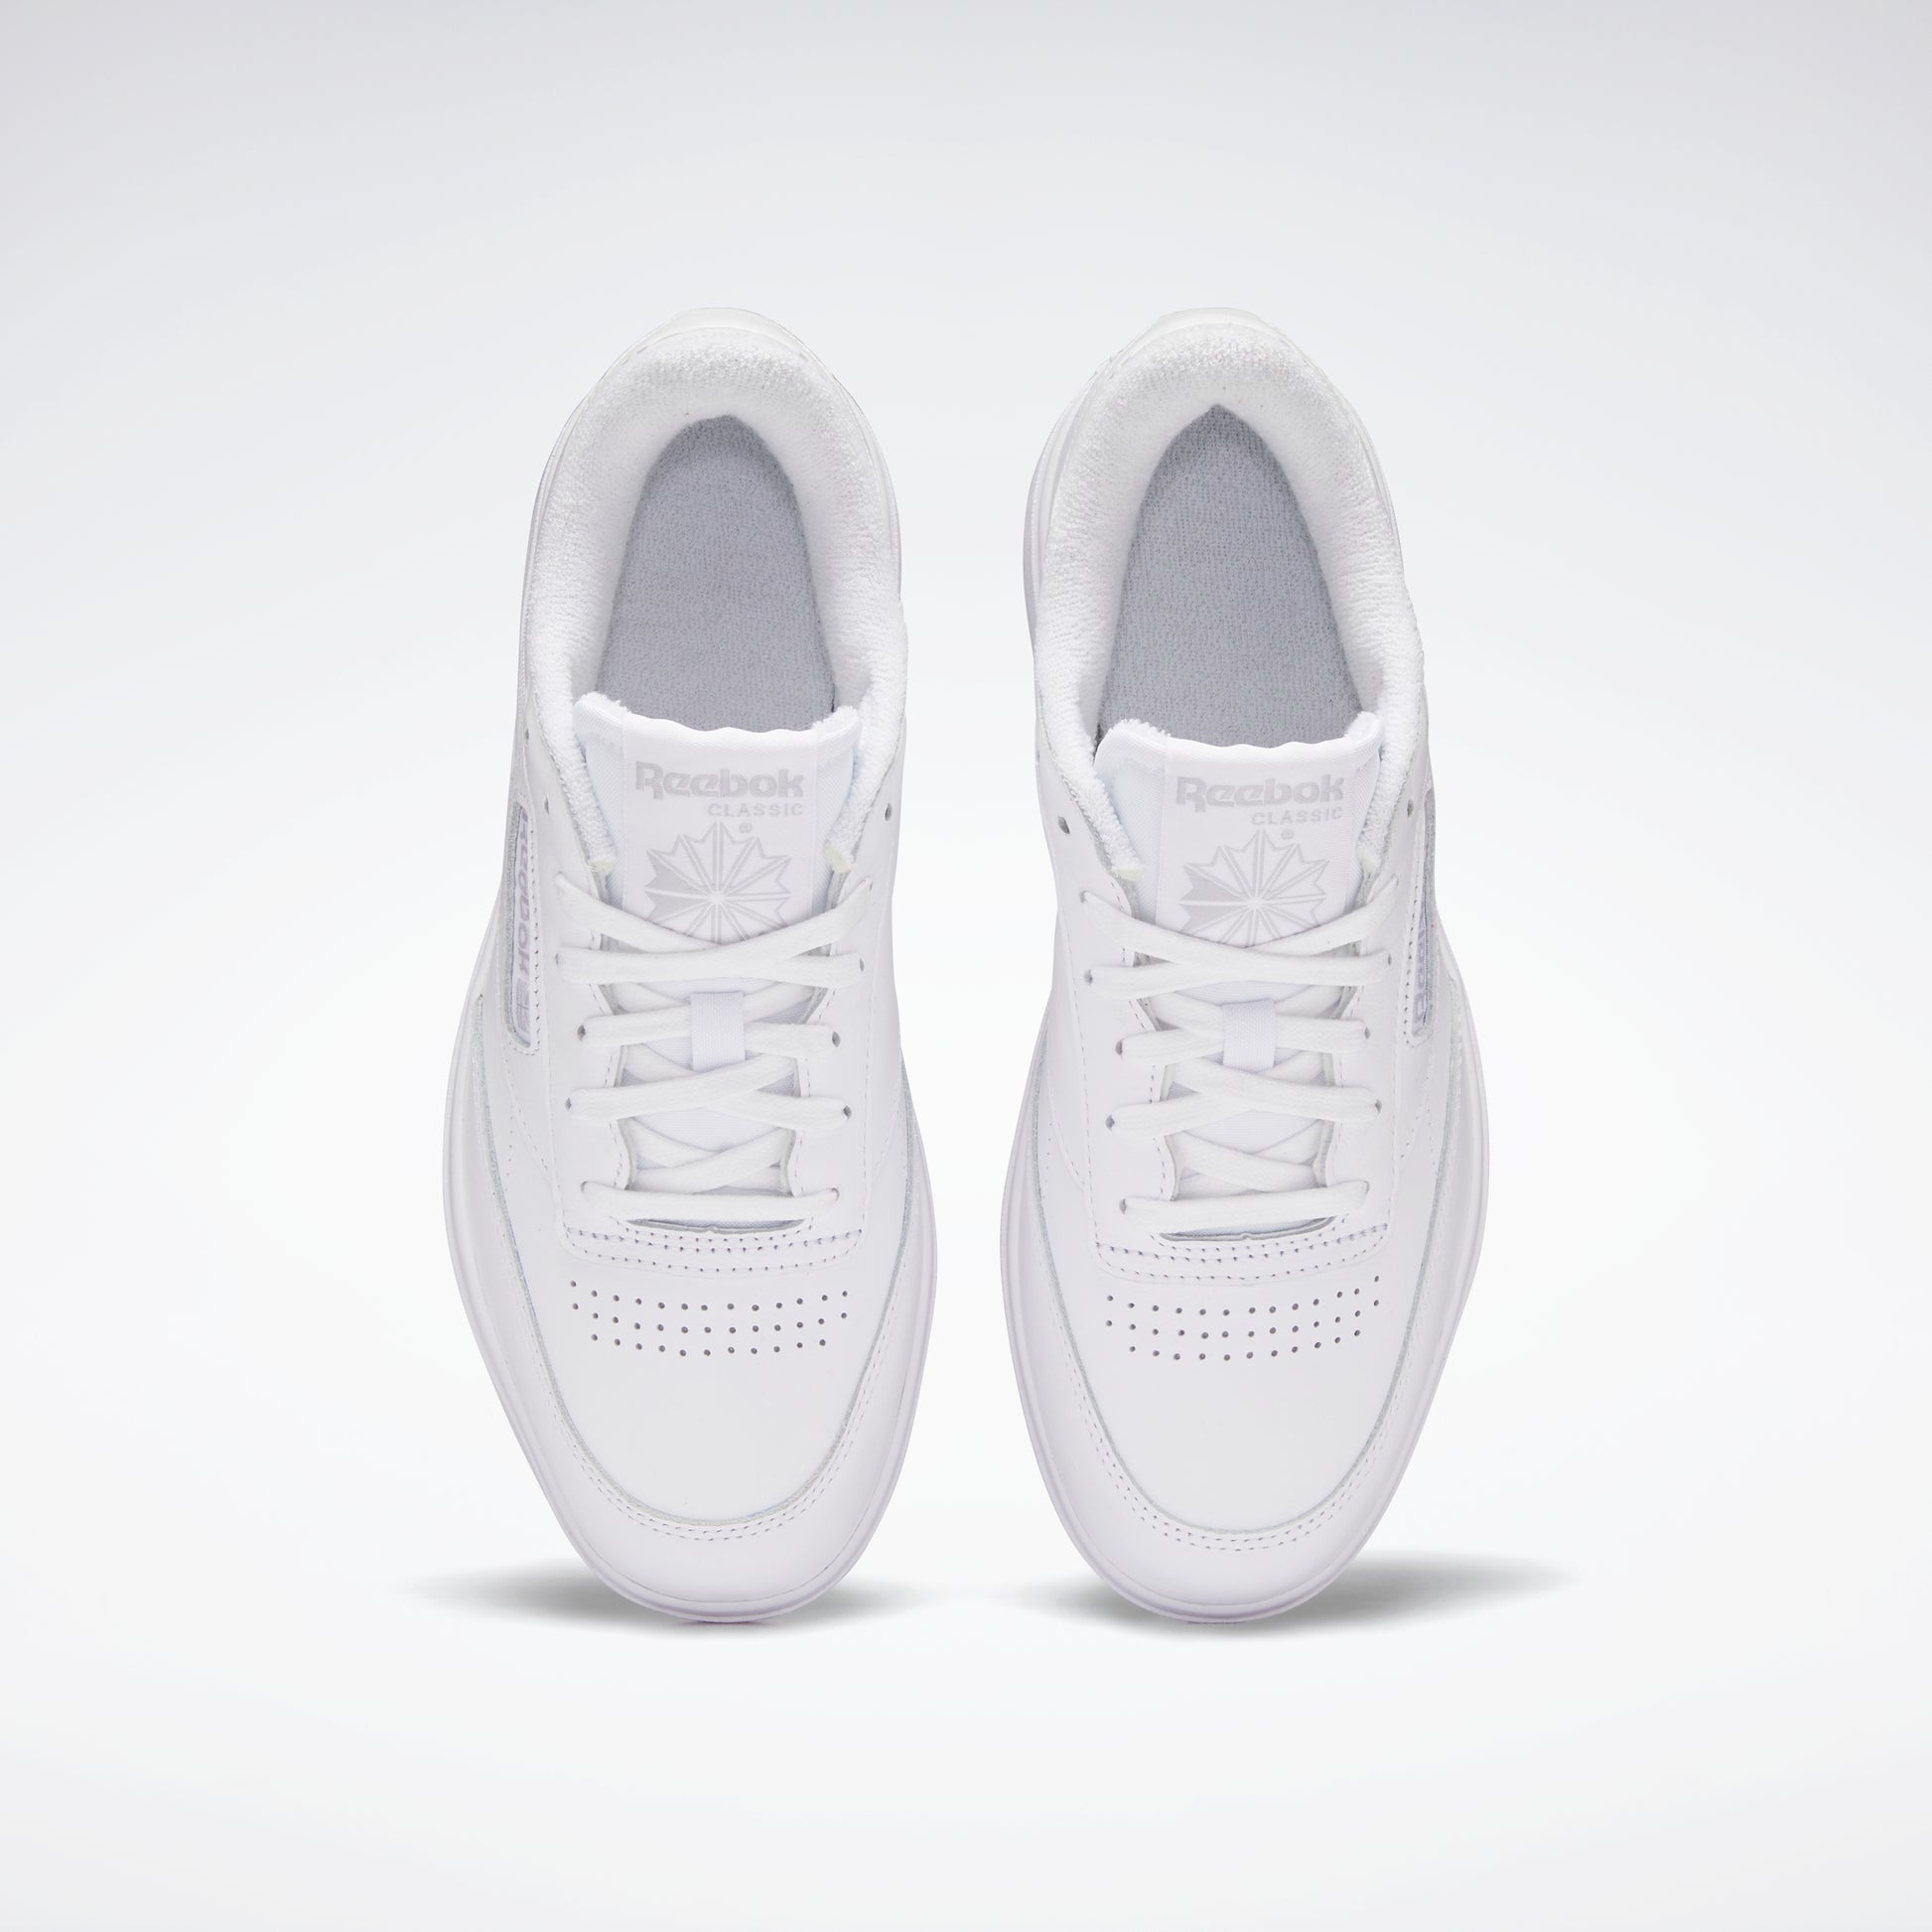 Club C Double Shoes White/White/Cold Grey 2 – Reebok Australia